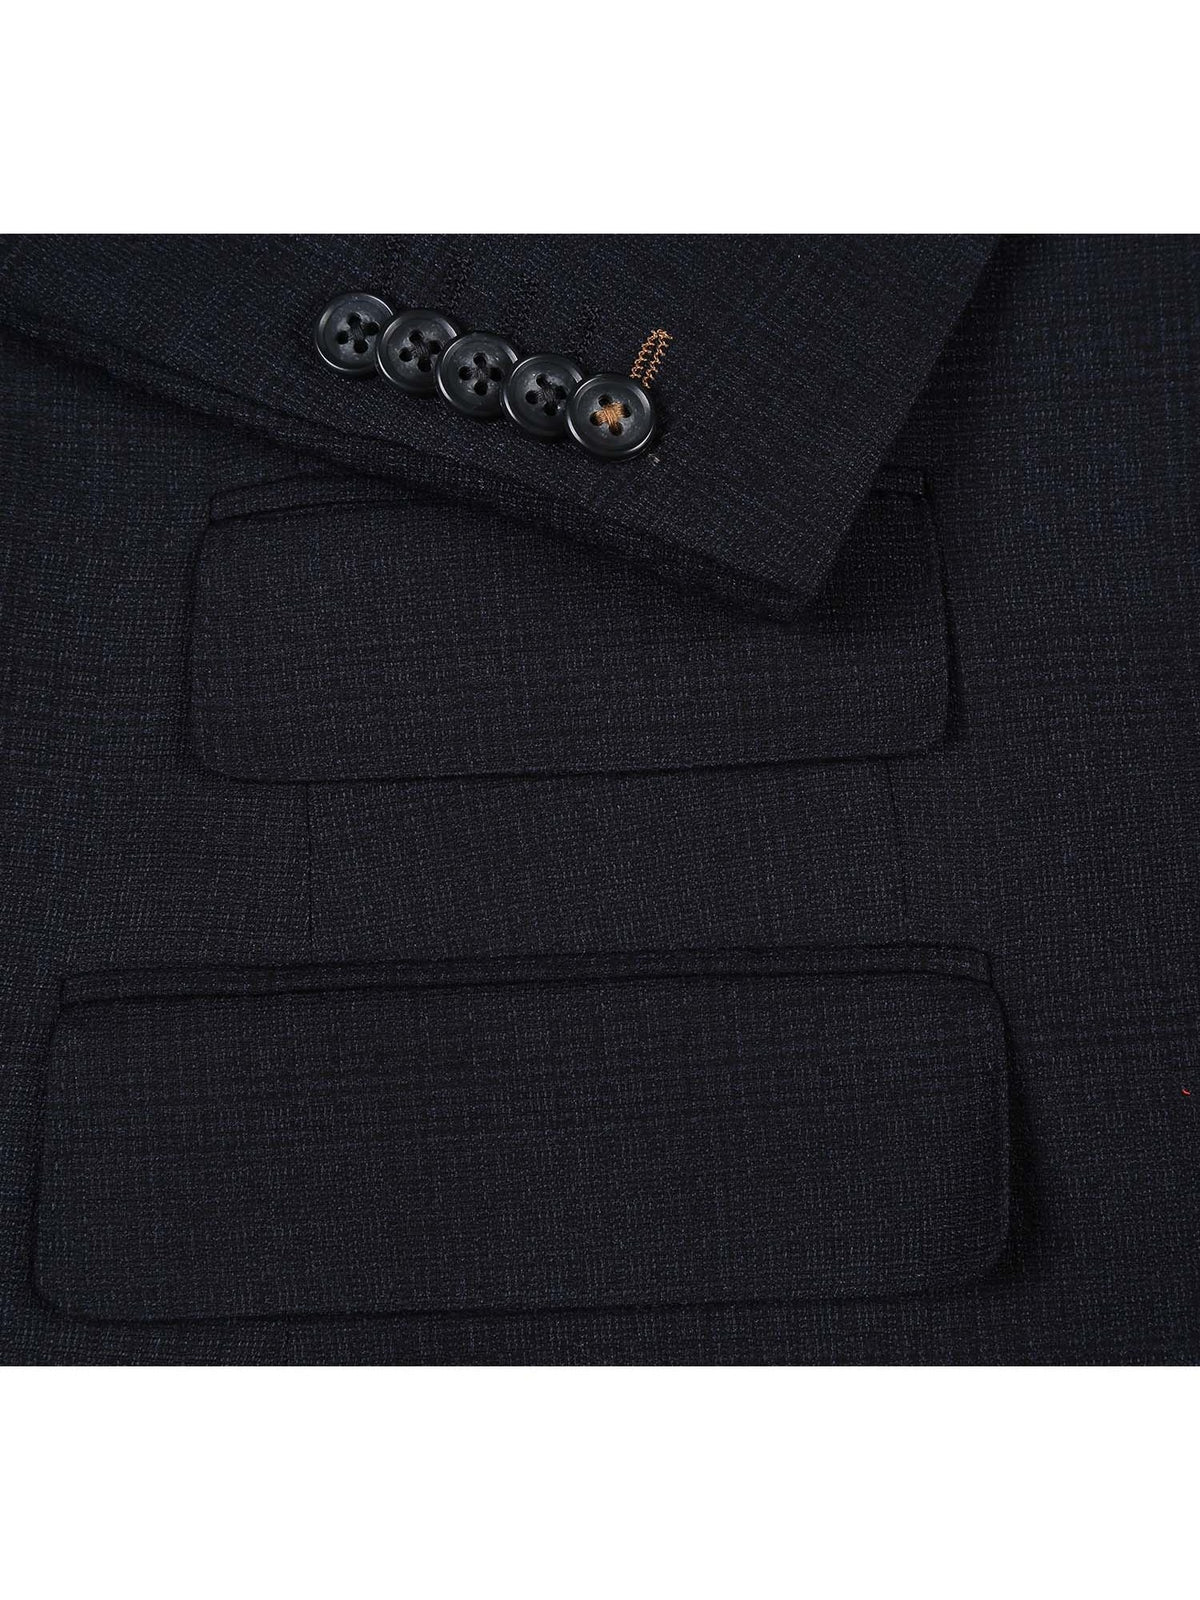 English Laundry Slim Fit Two button Black Blue Check Peak Lapel Suit